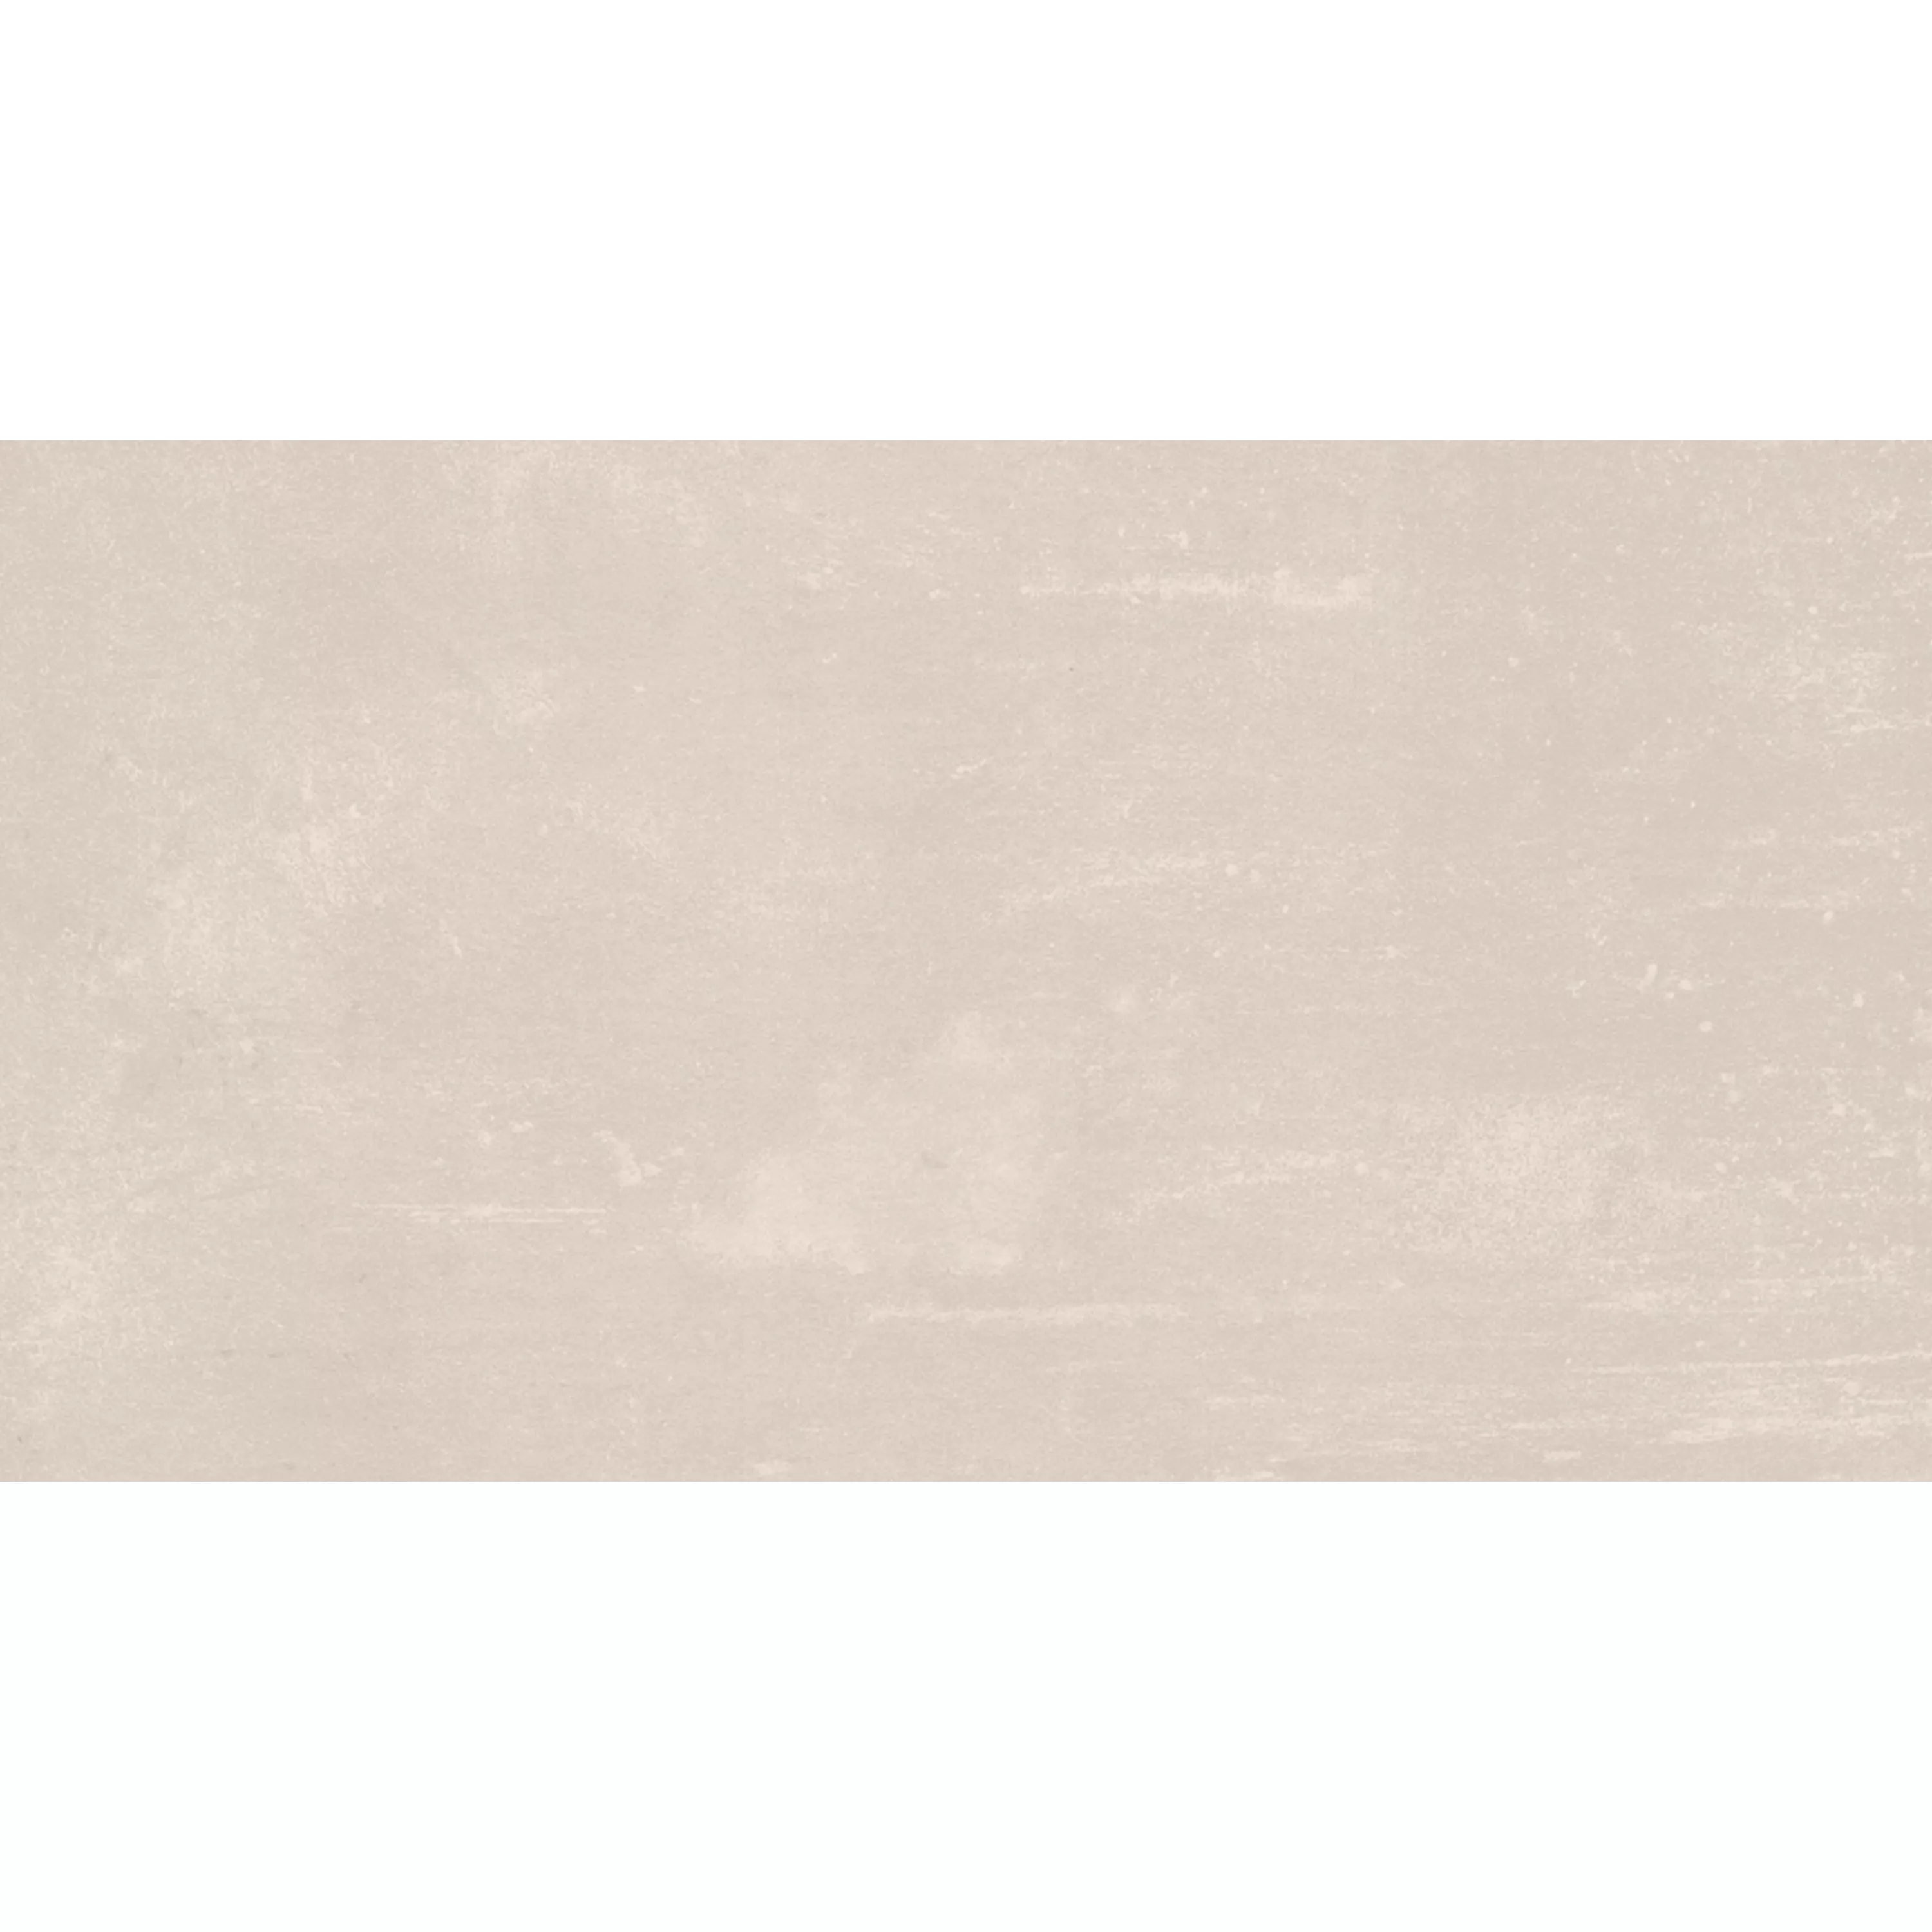 Πρότυπο από Πλακάκι Δαπέδου Castlebrook Πέτρινη Όψη Kρέμα 30x60cm